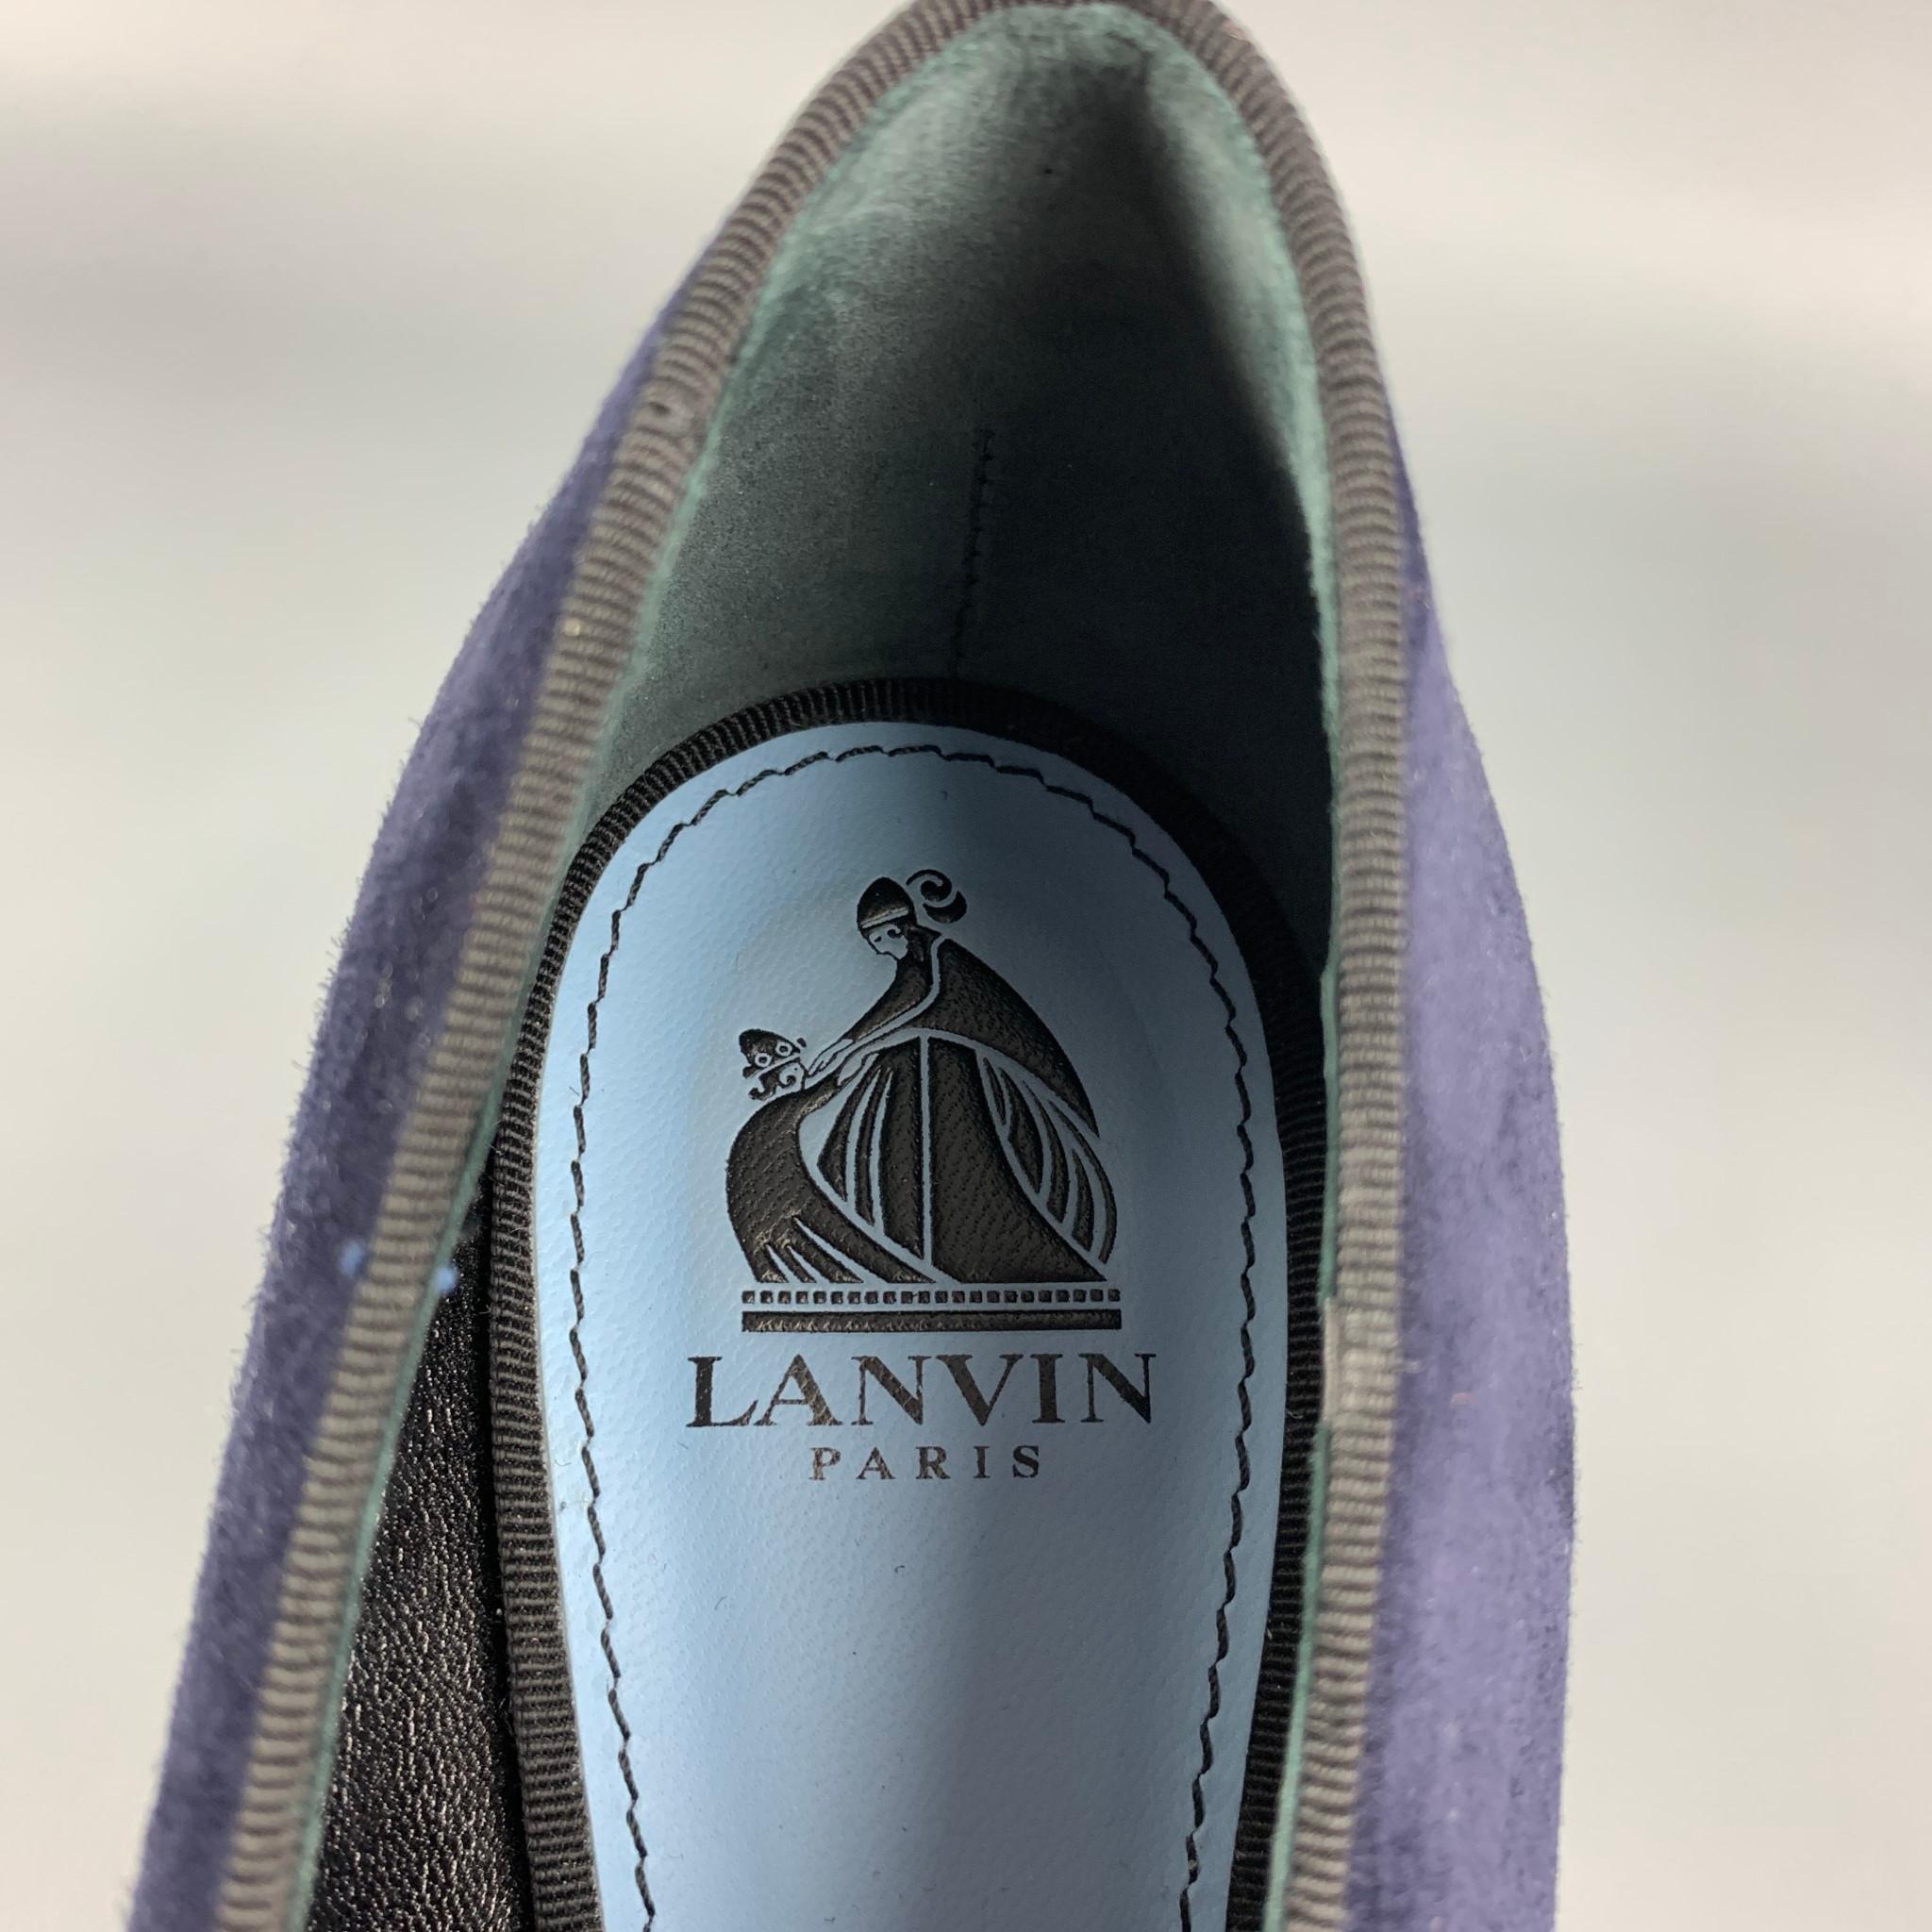 LANVIN Size 8 Navy Suede Patent Leather Cap Toe Pumps 1